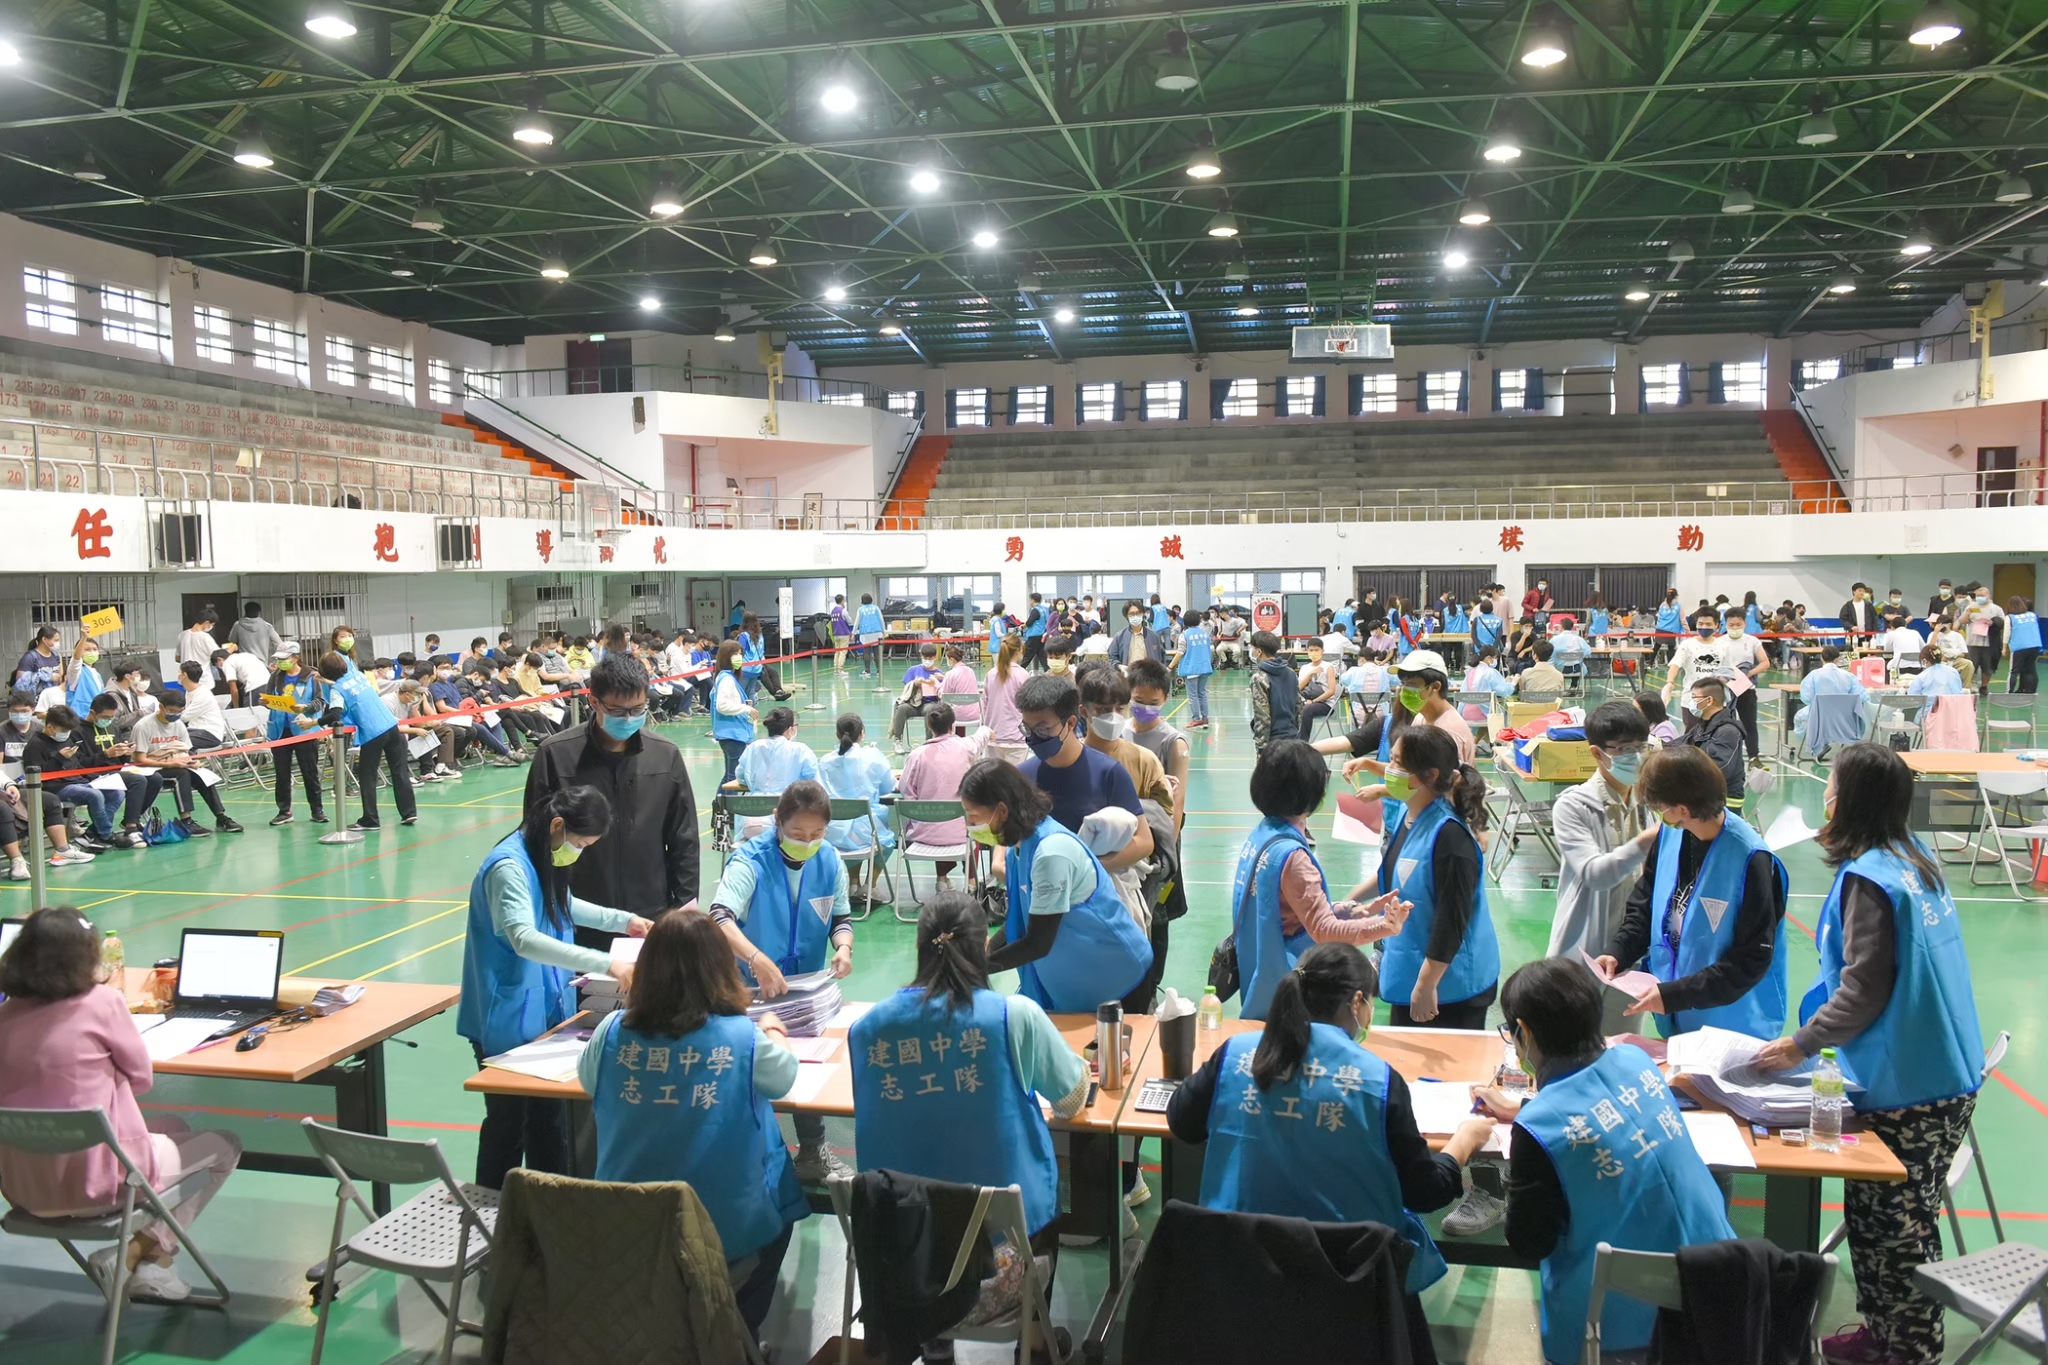 臺北市立建國高級中學學生家長會志工隊與學生互動生活照